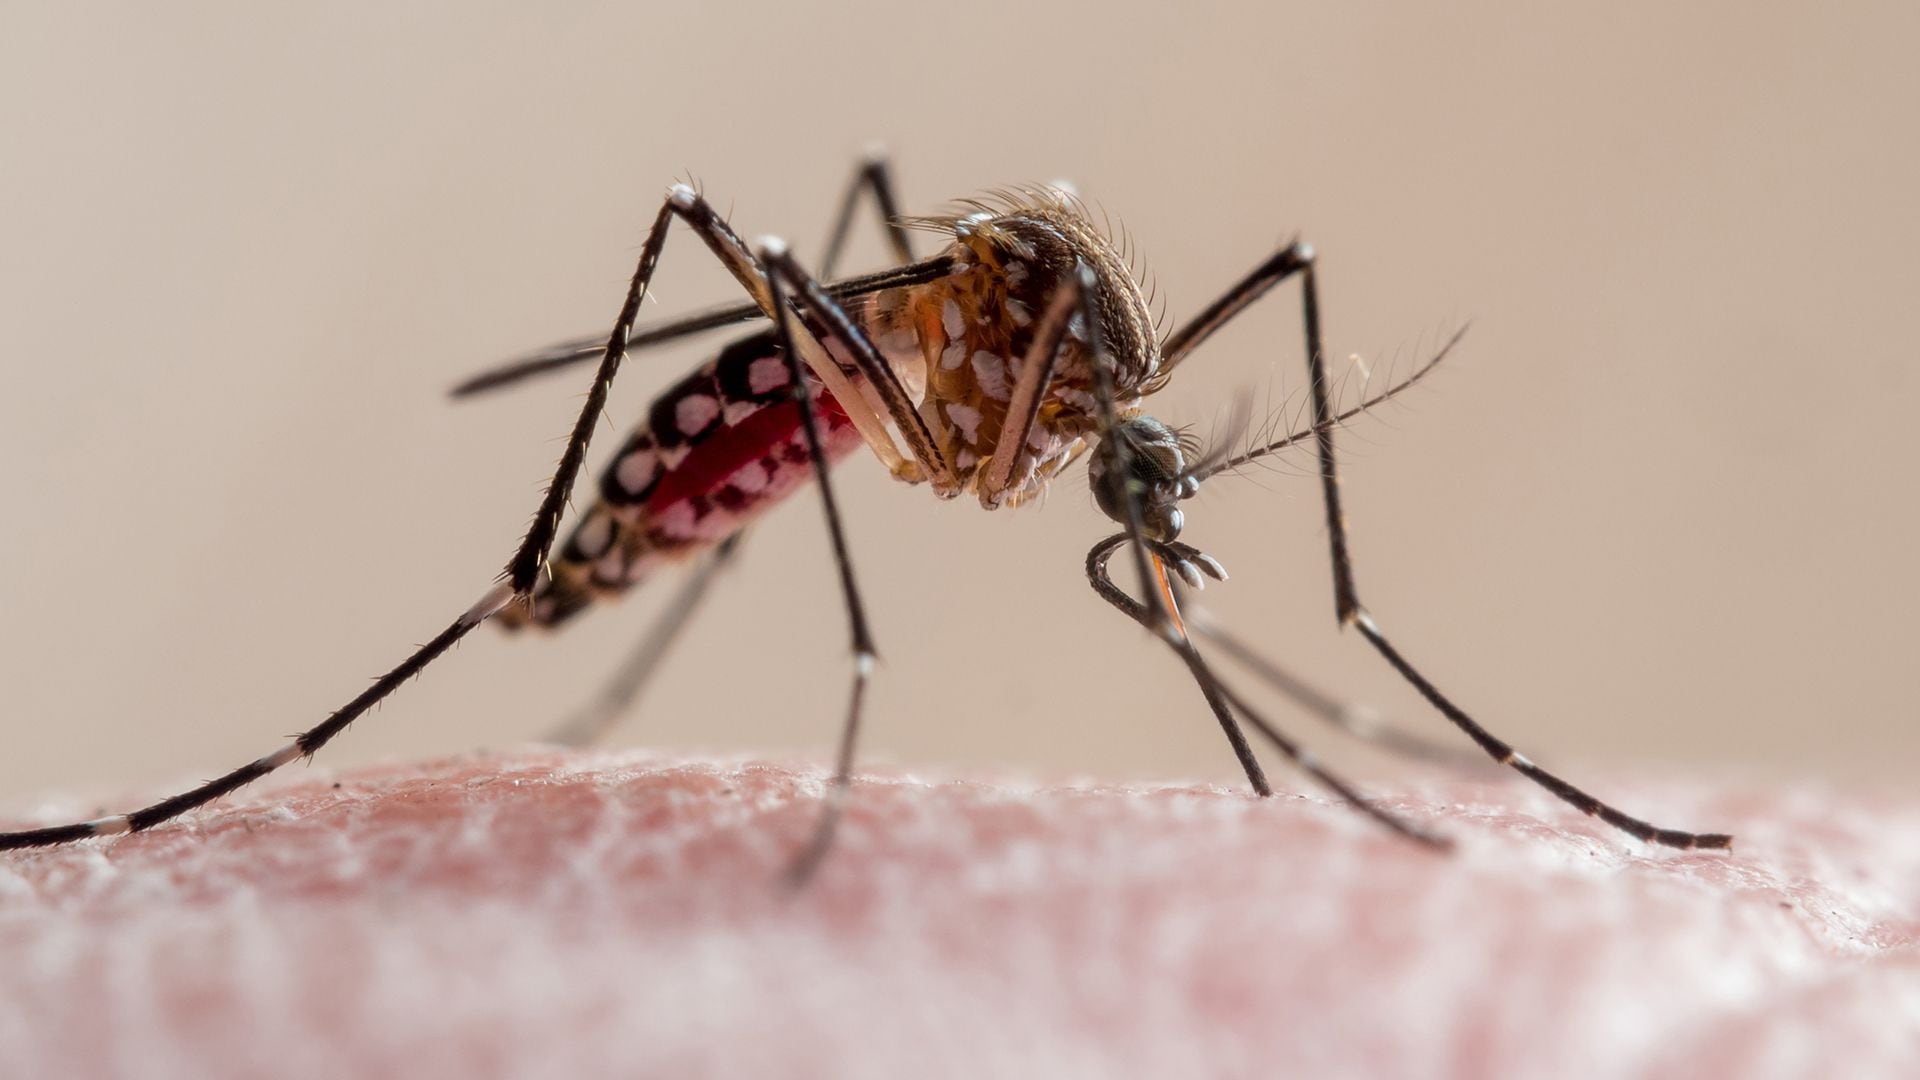 Aedes aegypti mosquito (mosquito da dengue)